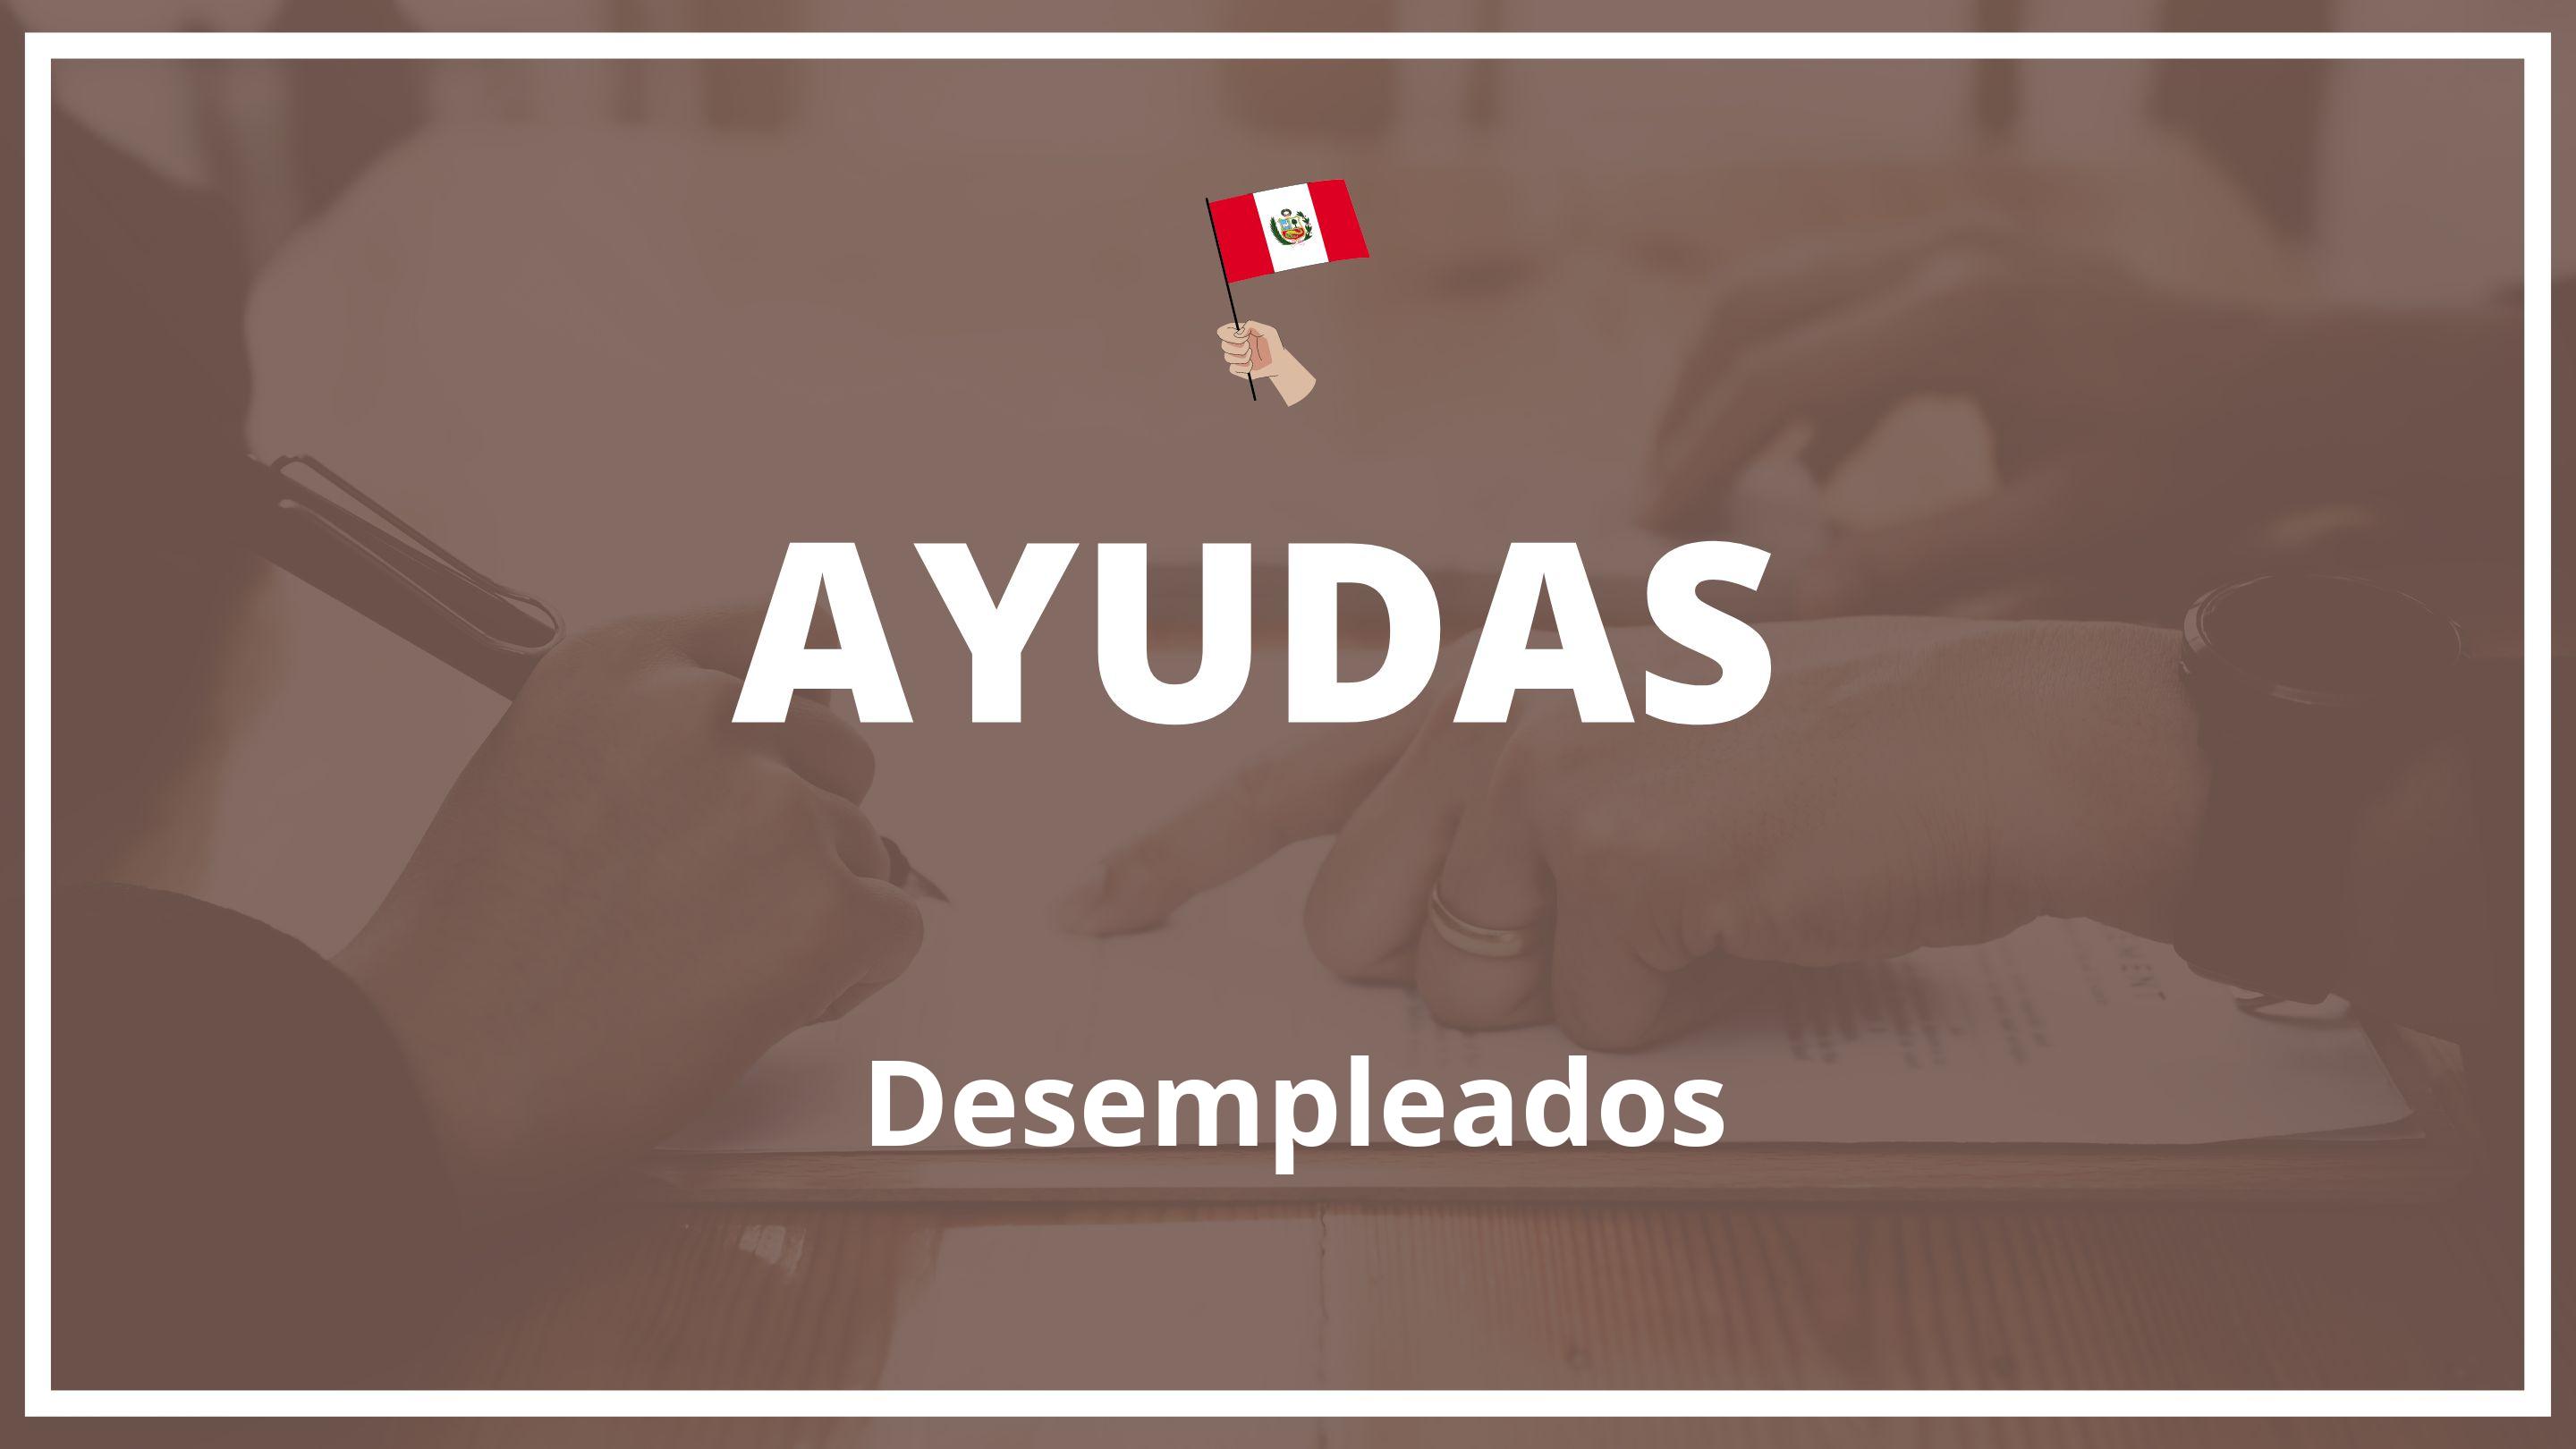 Ayudas para desempleados Peru